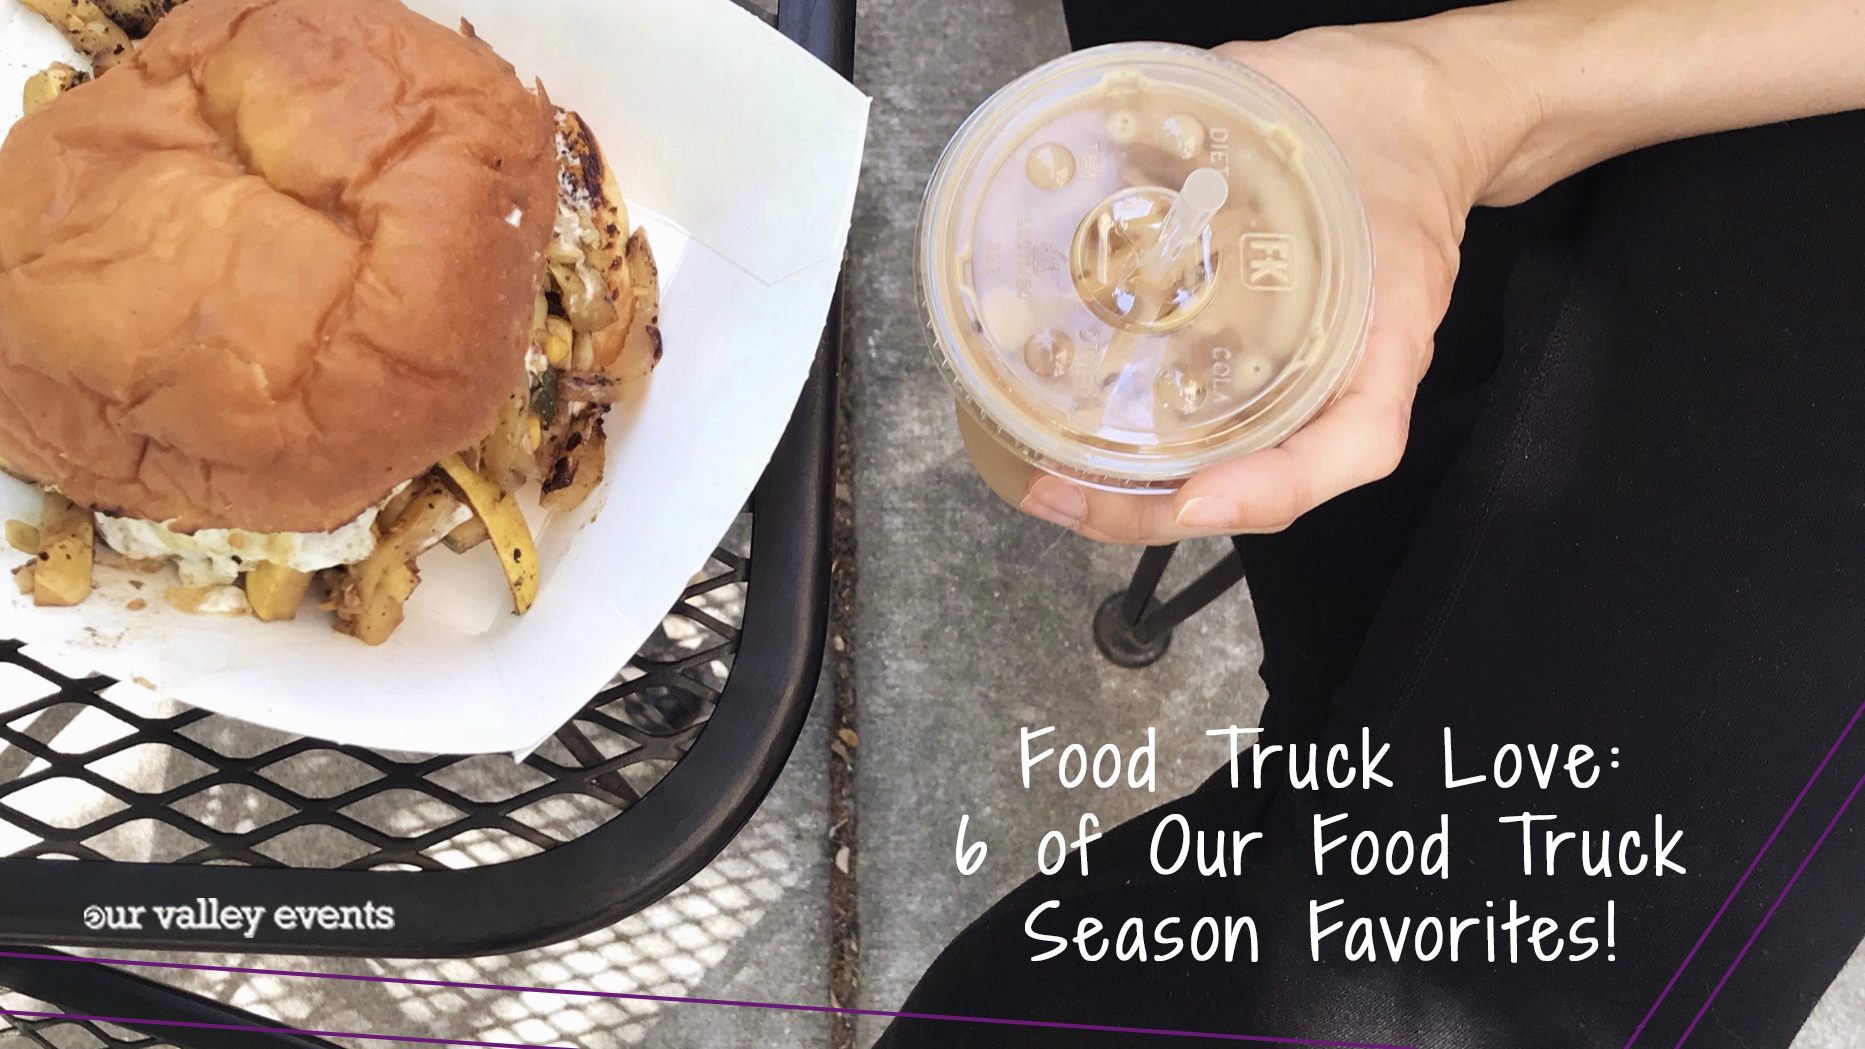 Food Truck Love: 6 of Our Food Truck Season Favorites!